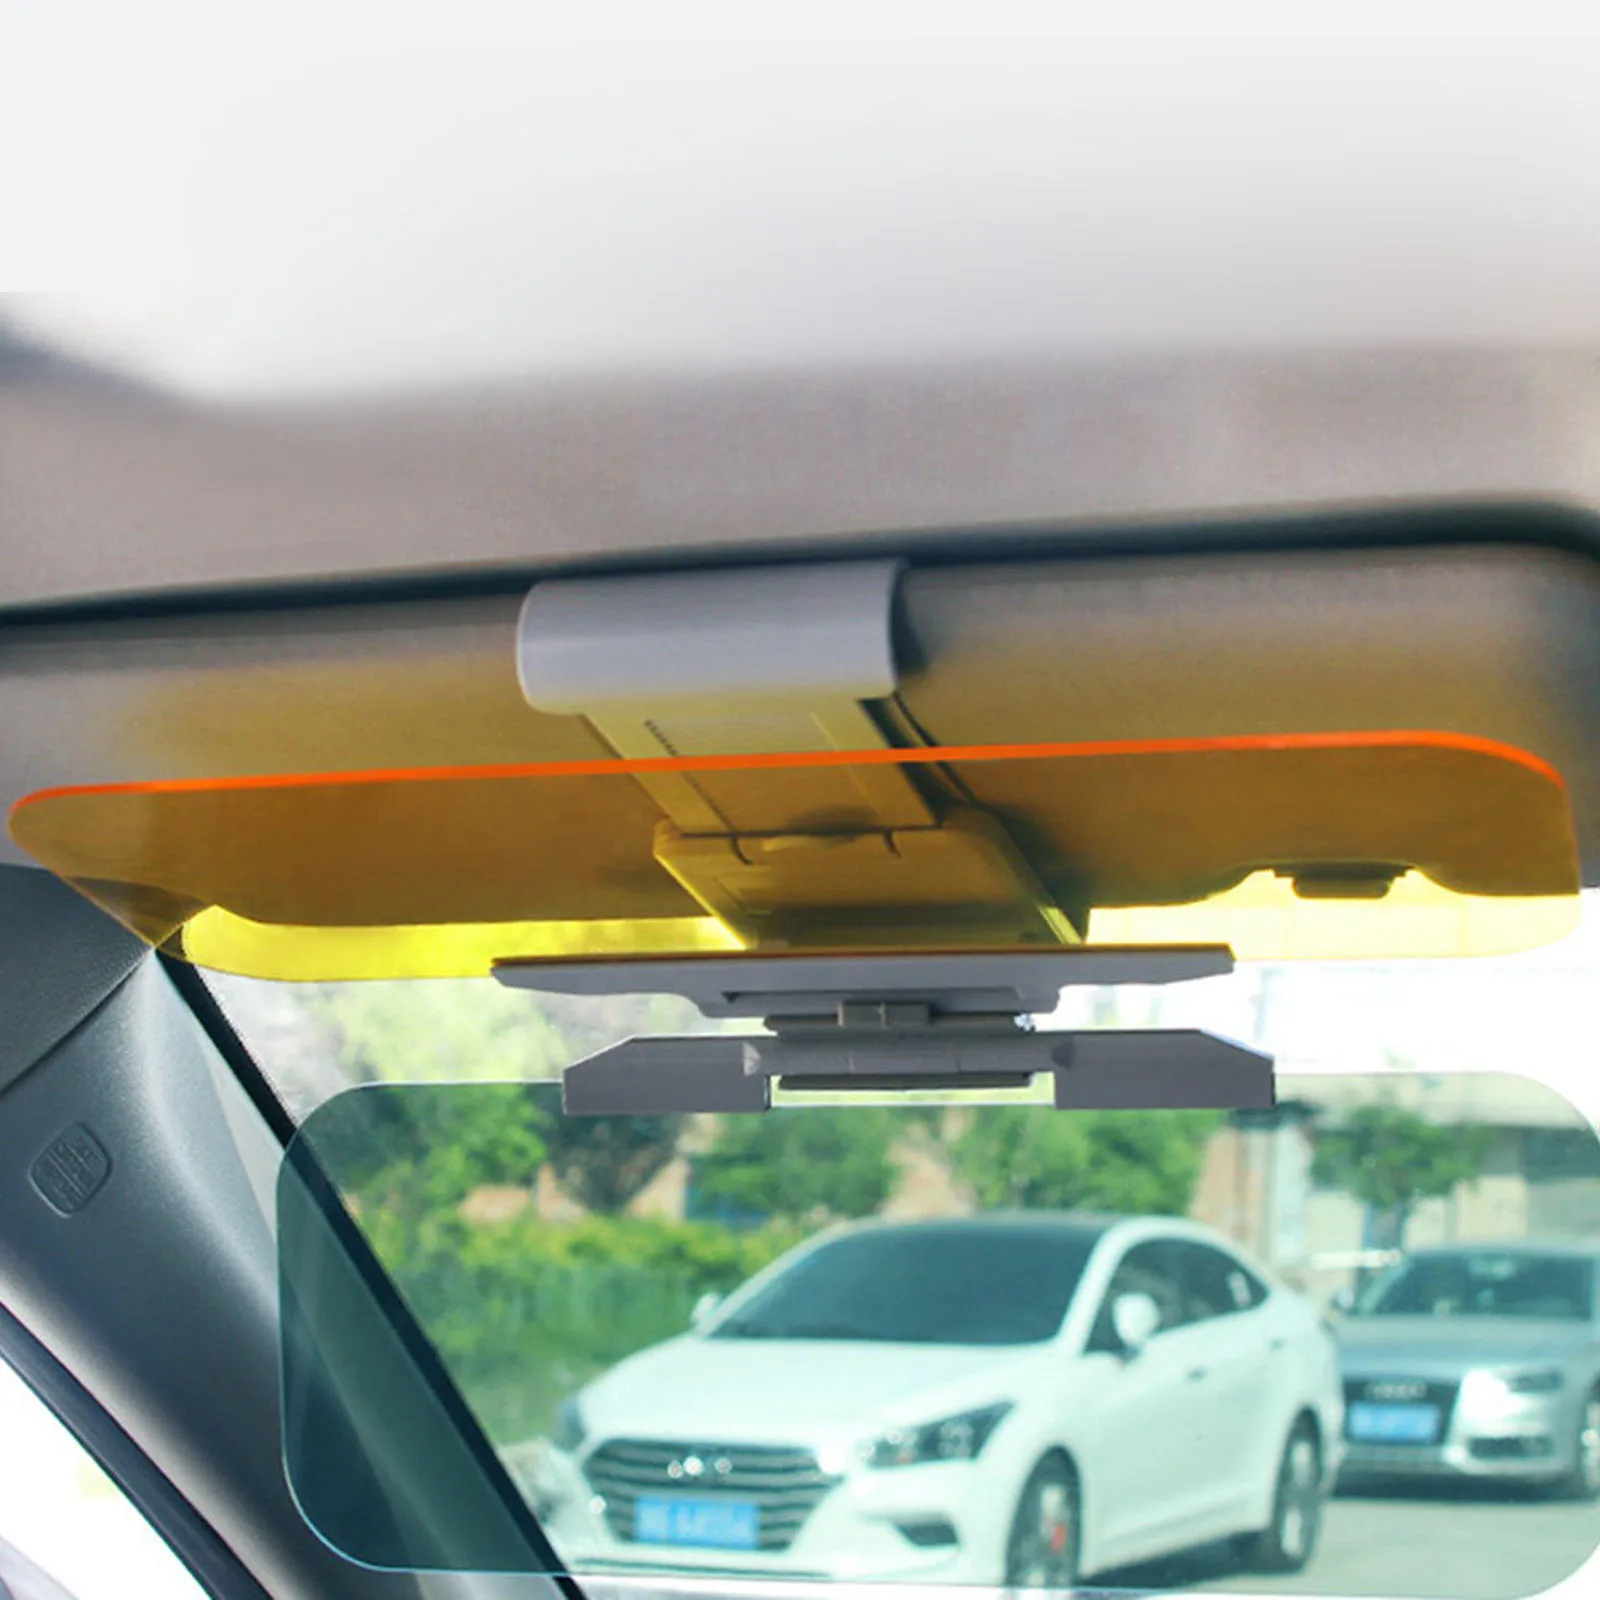 Солнцезащитный козырёк для JCB на лобовое стекло. Противосолнечный козырек для автомобиля. Козырек от солнца в машине. Солнечный козырек автомобильный.